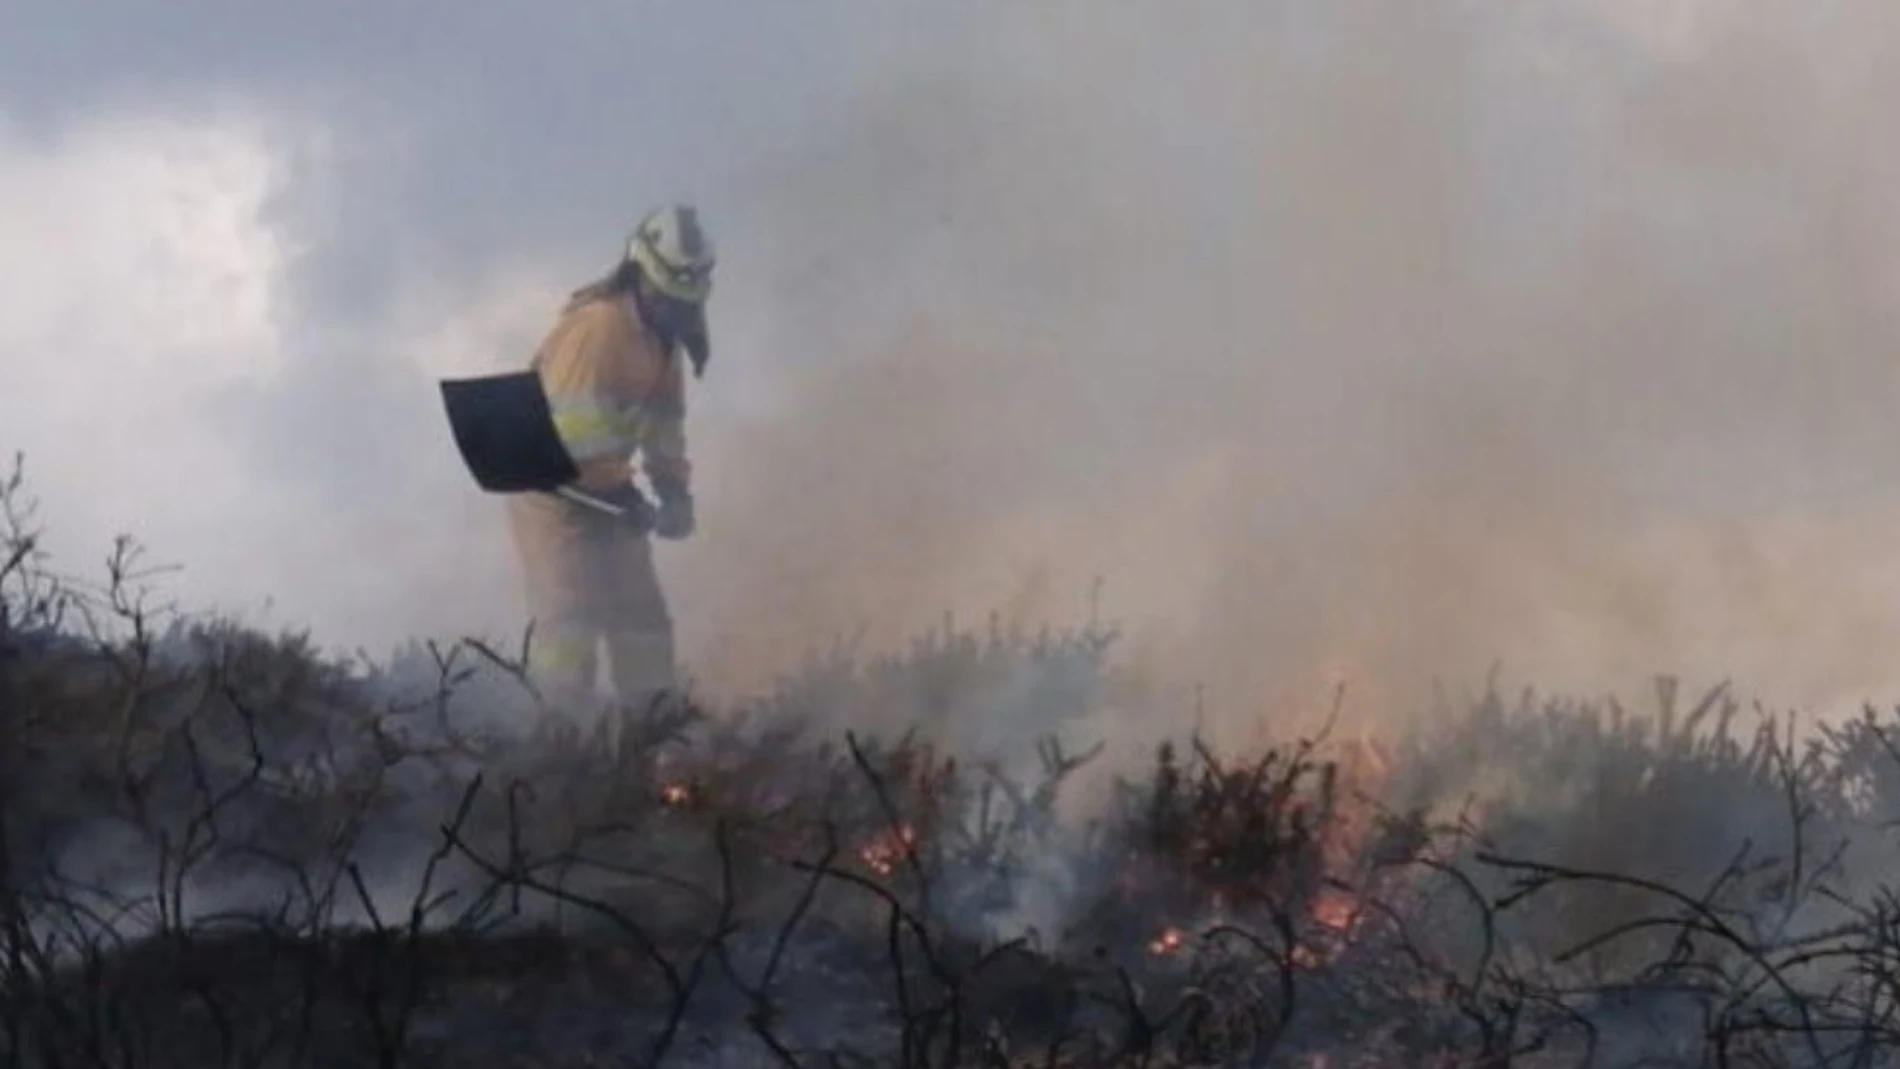 Imagen de un incendio forestal en Cantabria